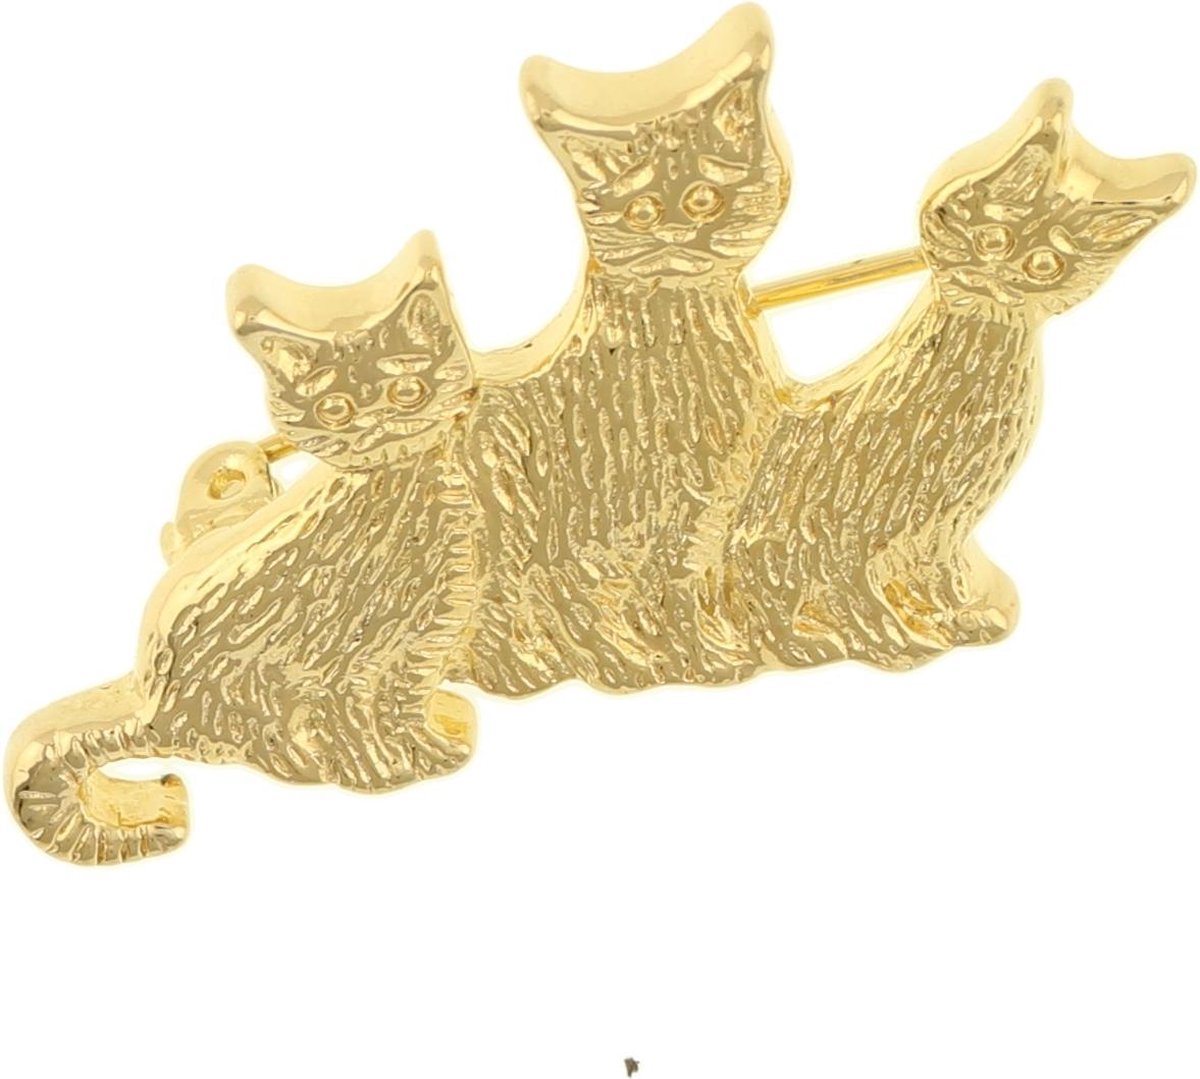 Behave® Broche poezen katten glanzend goud kleur 3,5 cm